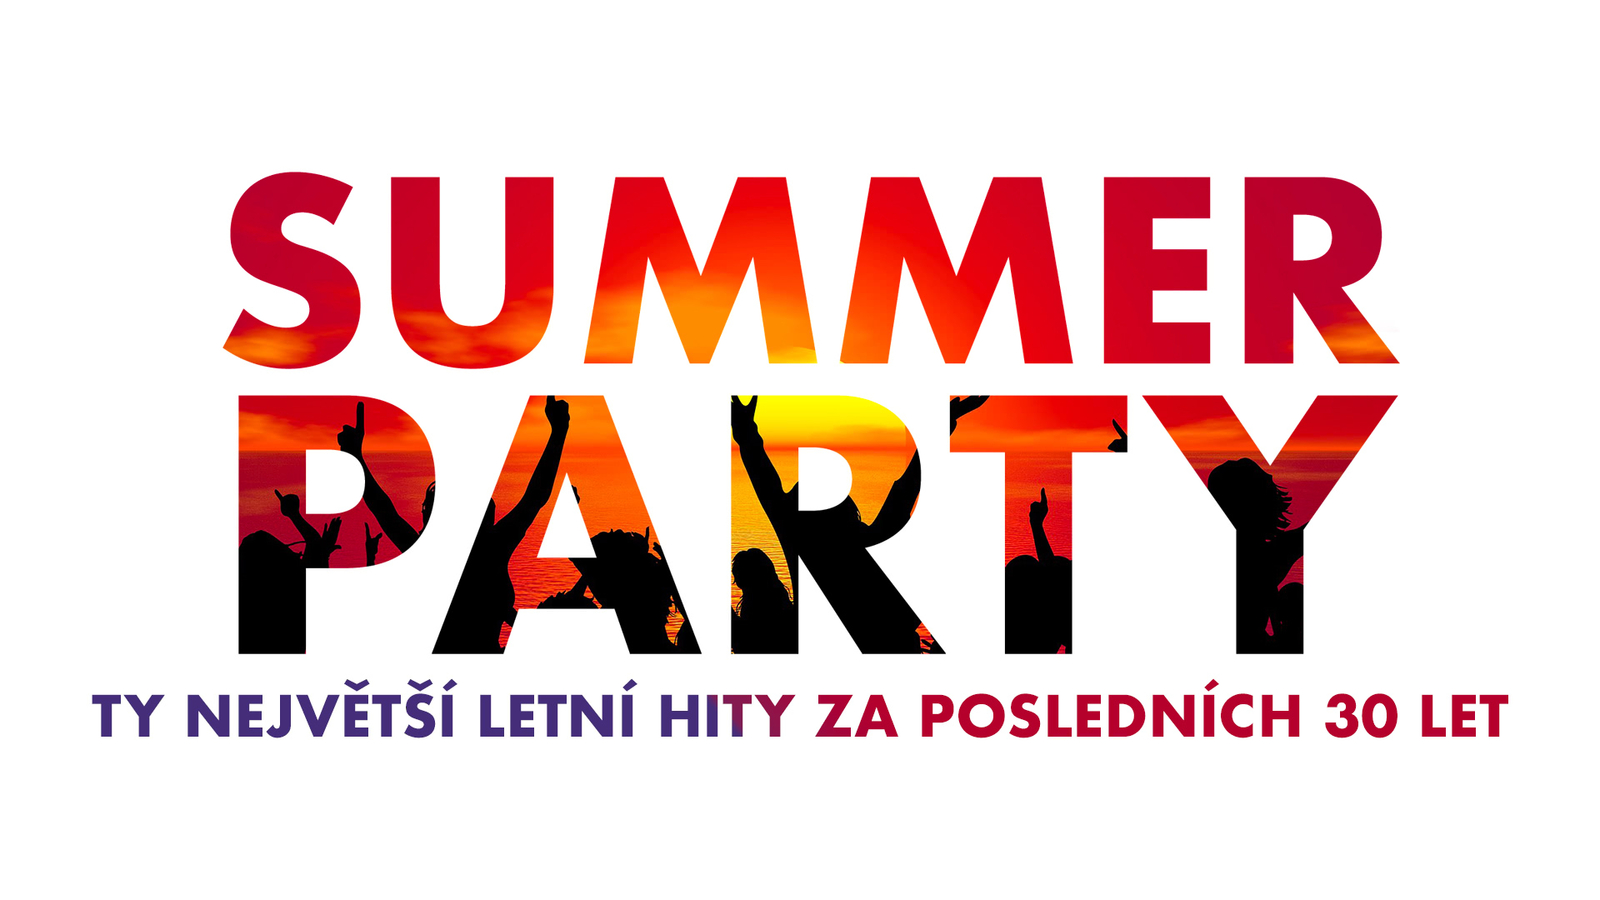 SUMMER PARTY na Hitrádiu Černá Hora! Užijte si největší letní hity za posledních 30 let!